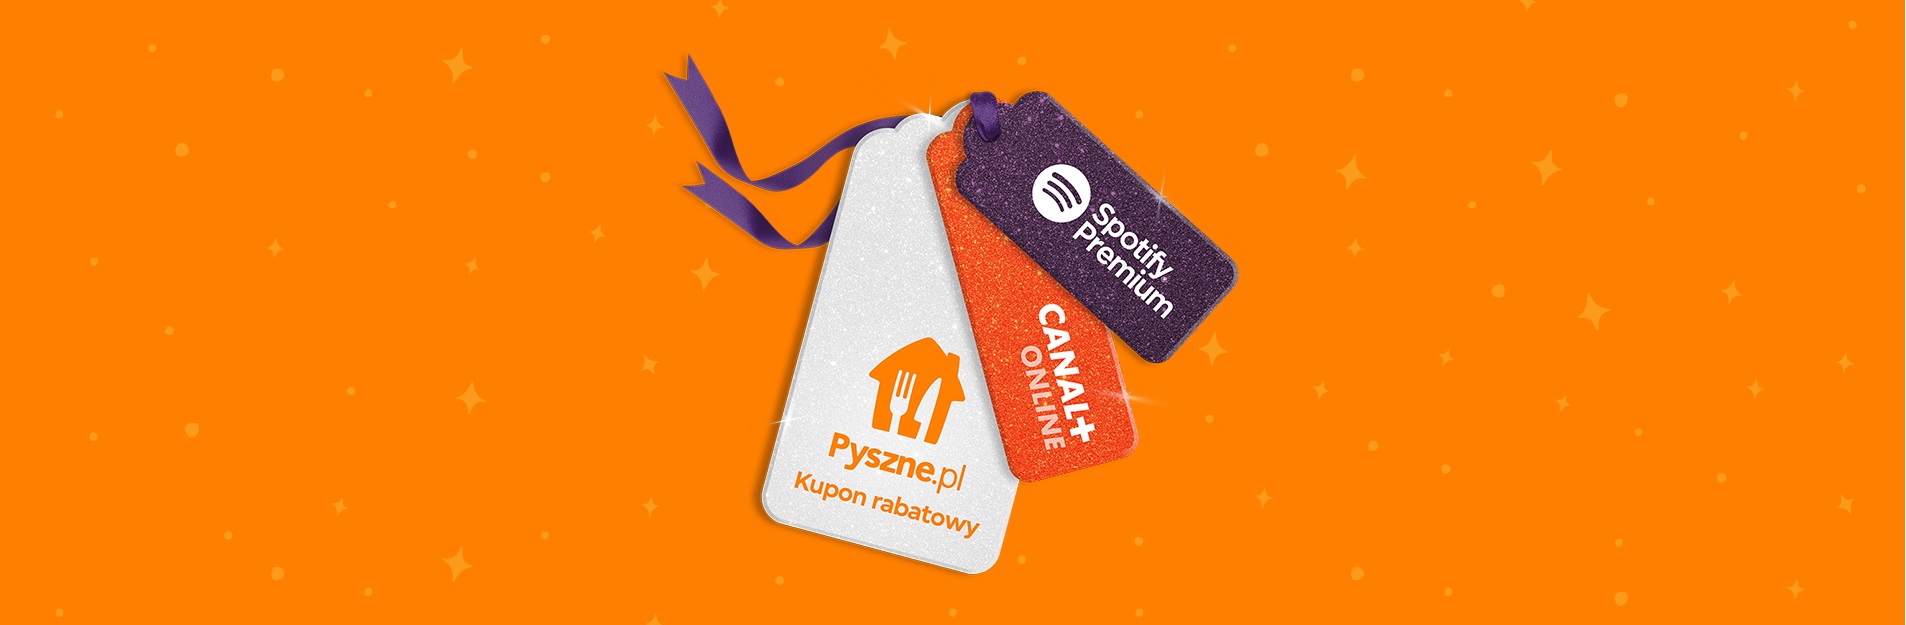 CANAL+ online Spotify Premium za darmo kod rabatowy 15 złotych do Pyszne.pl fot. Tabletowo.pl